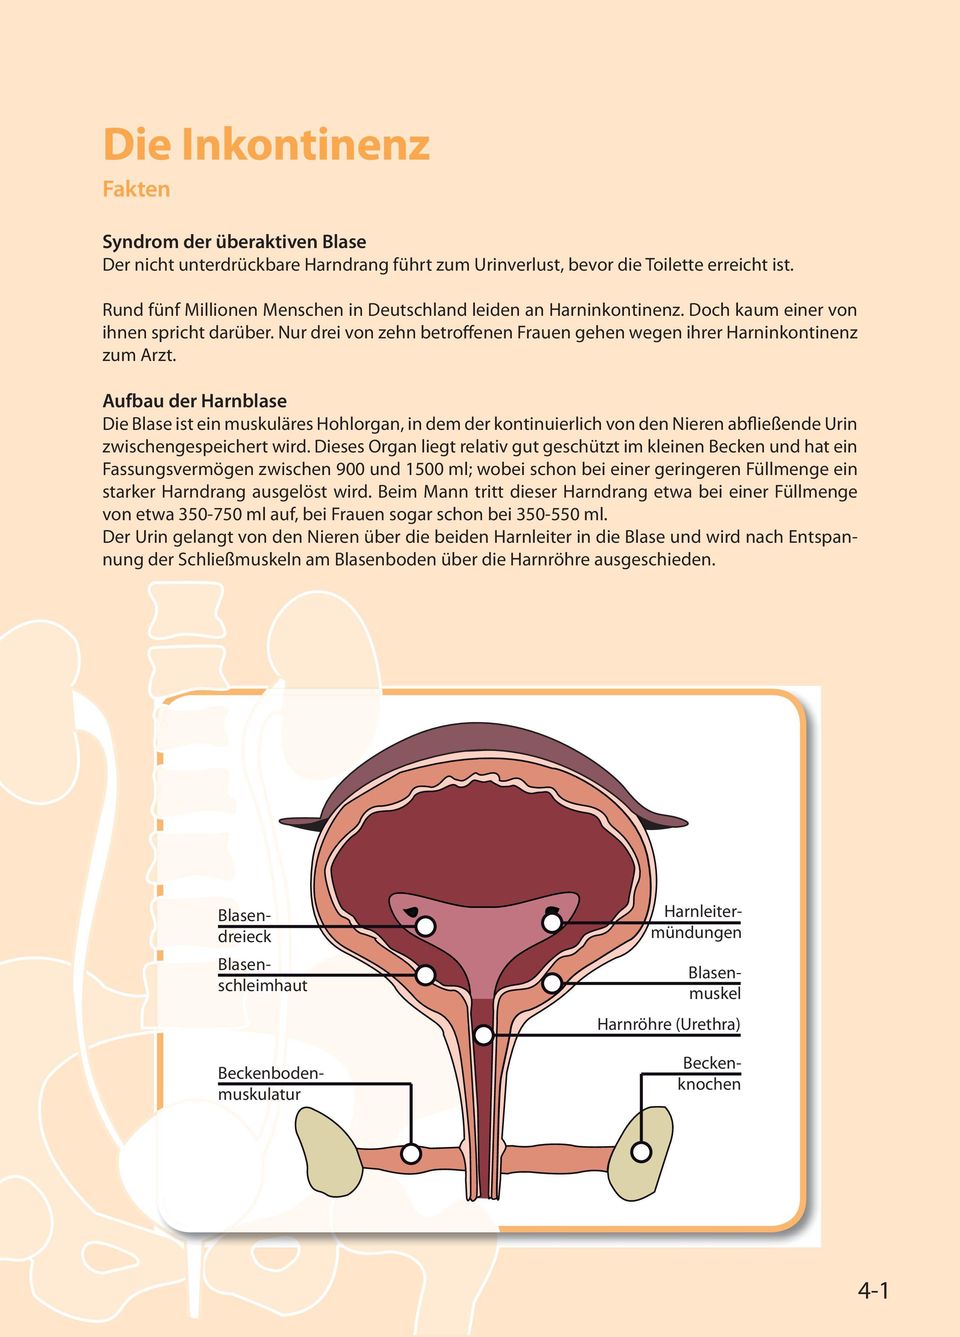 Aufbau der Harnblase Die Blase ist ein muskuläres Hohlorgan, in dem der kontinuierlich von den Nieren abfließende Urin zwischengespeichert wird.